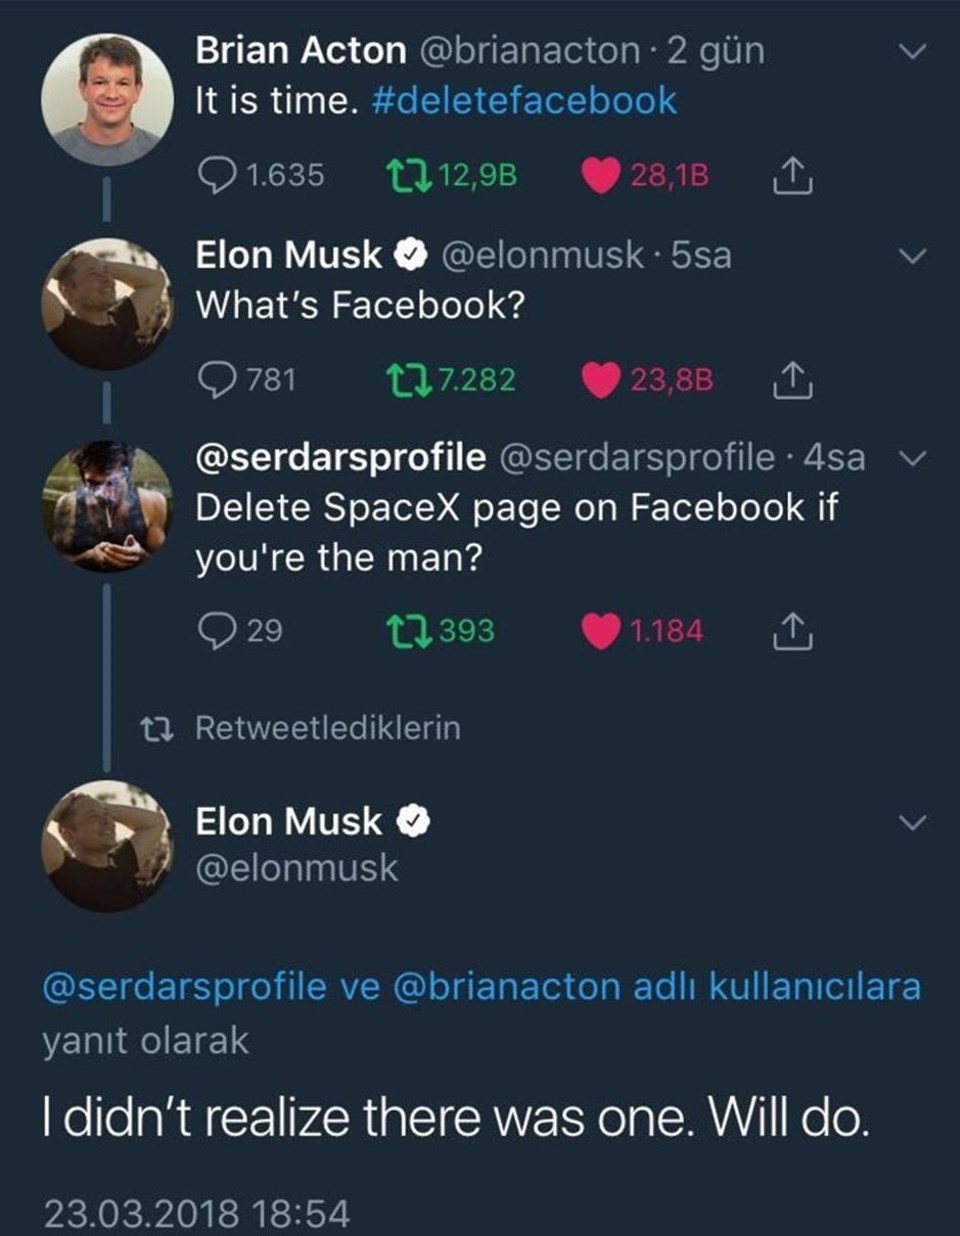 Twitter'daki  takipçilerinin yoğun isteği üzerine 46 yaşındaki milyarder girişimci 2 buçuk milyondan fazla takipçisi bulunan Tesla ve SpaceX’in resmi Facebook hesaplarını silmişti

